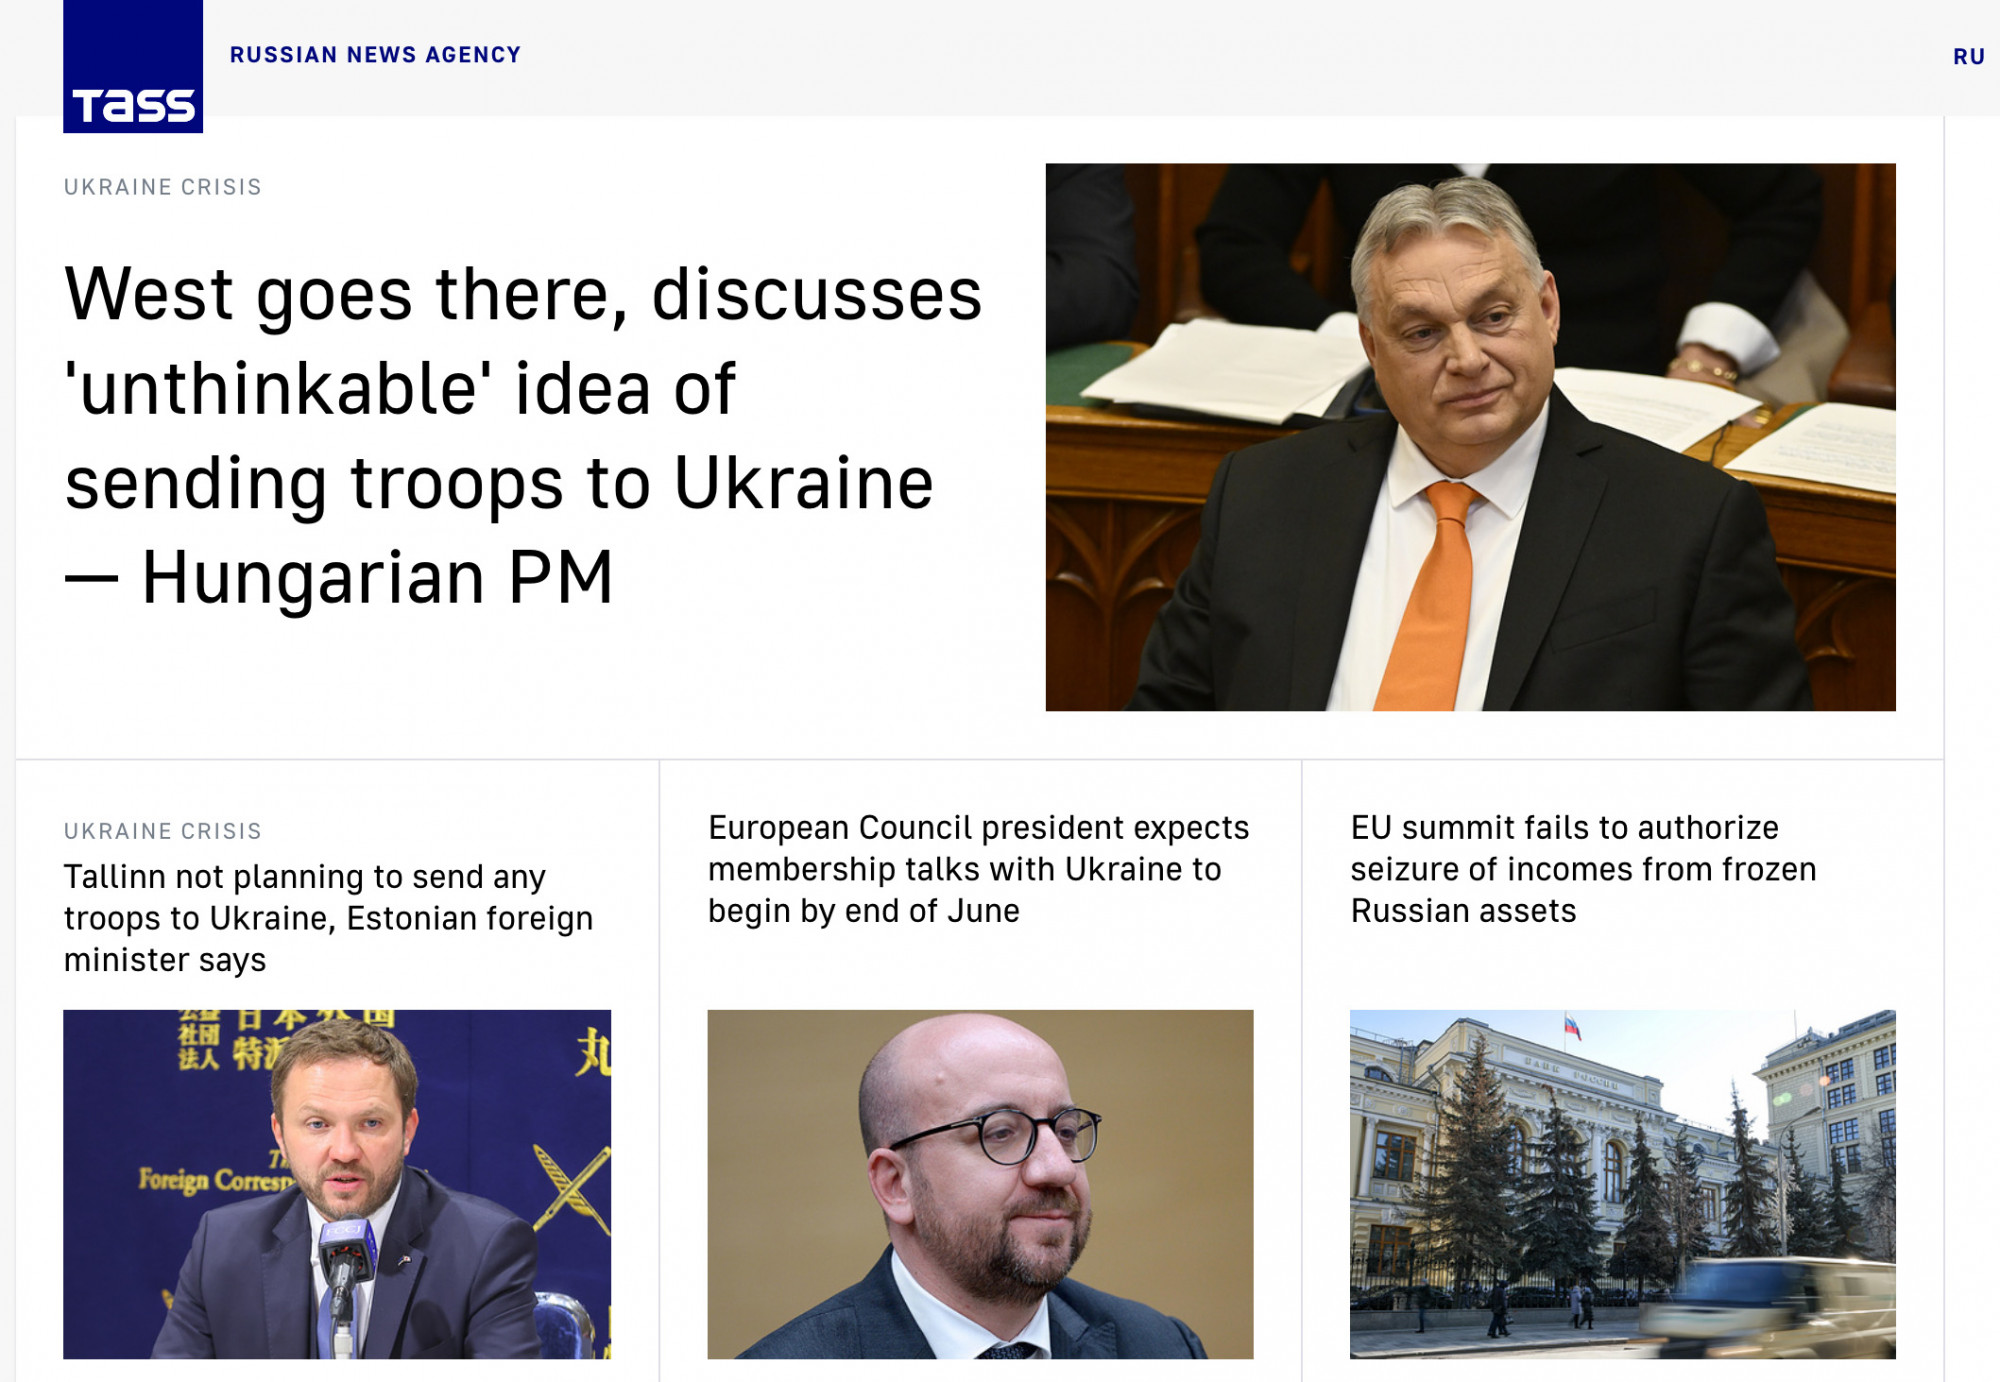 Az orosz állami hírügynökség vezető anyaga most Orbán reggeli rádióinterjúja